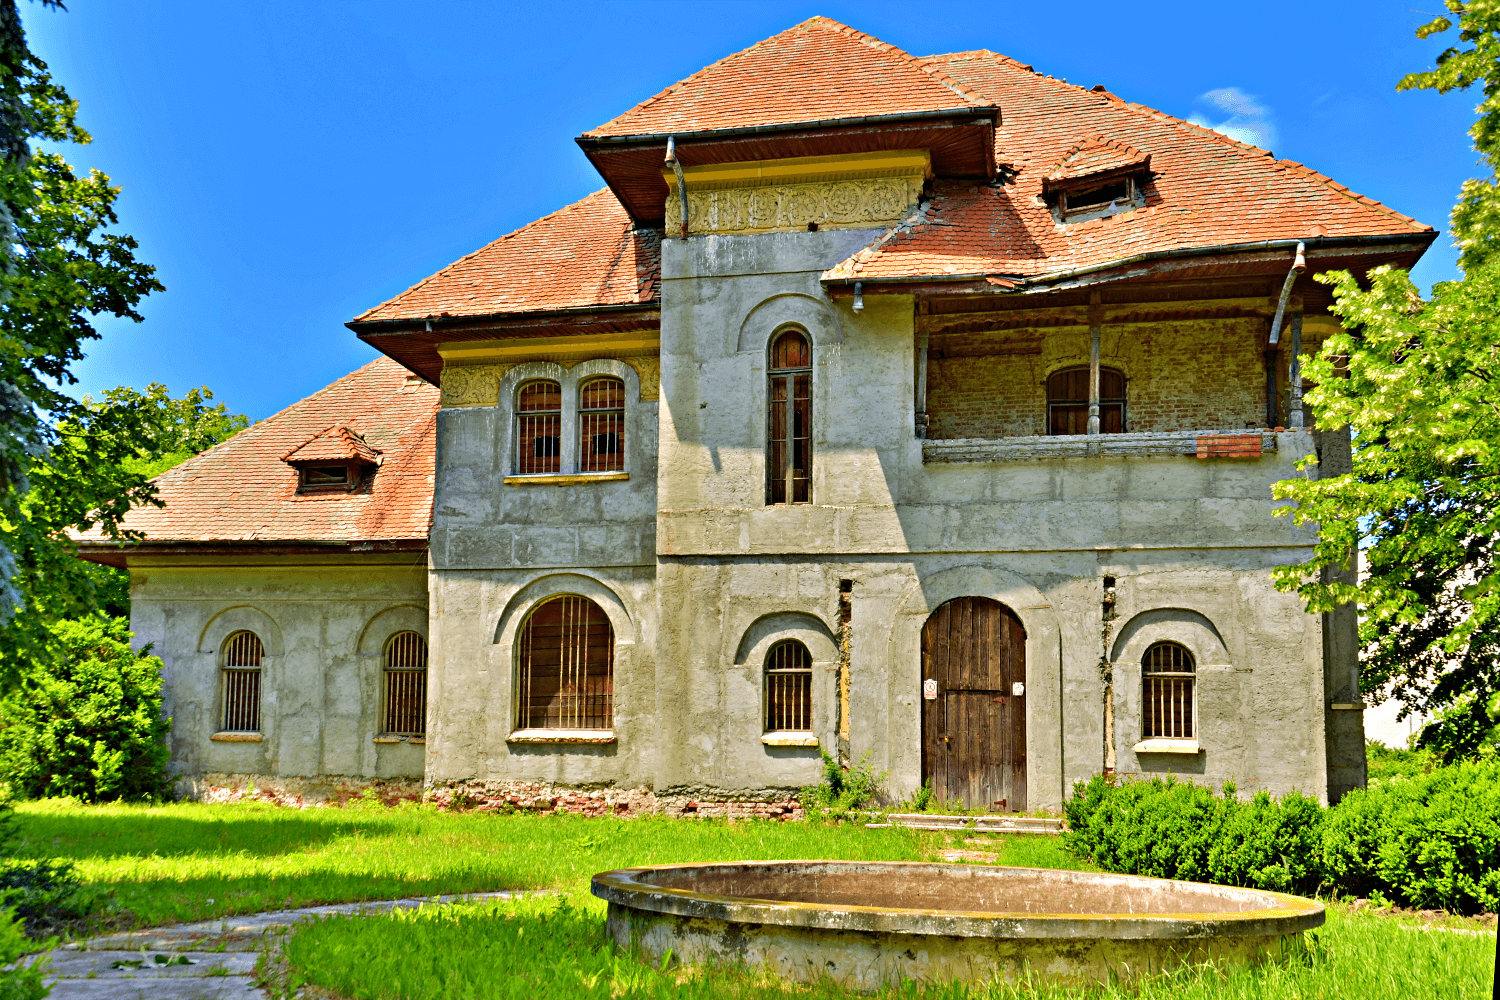 Nicu Chiroiu Manor